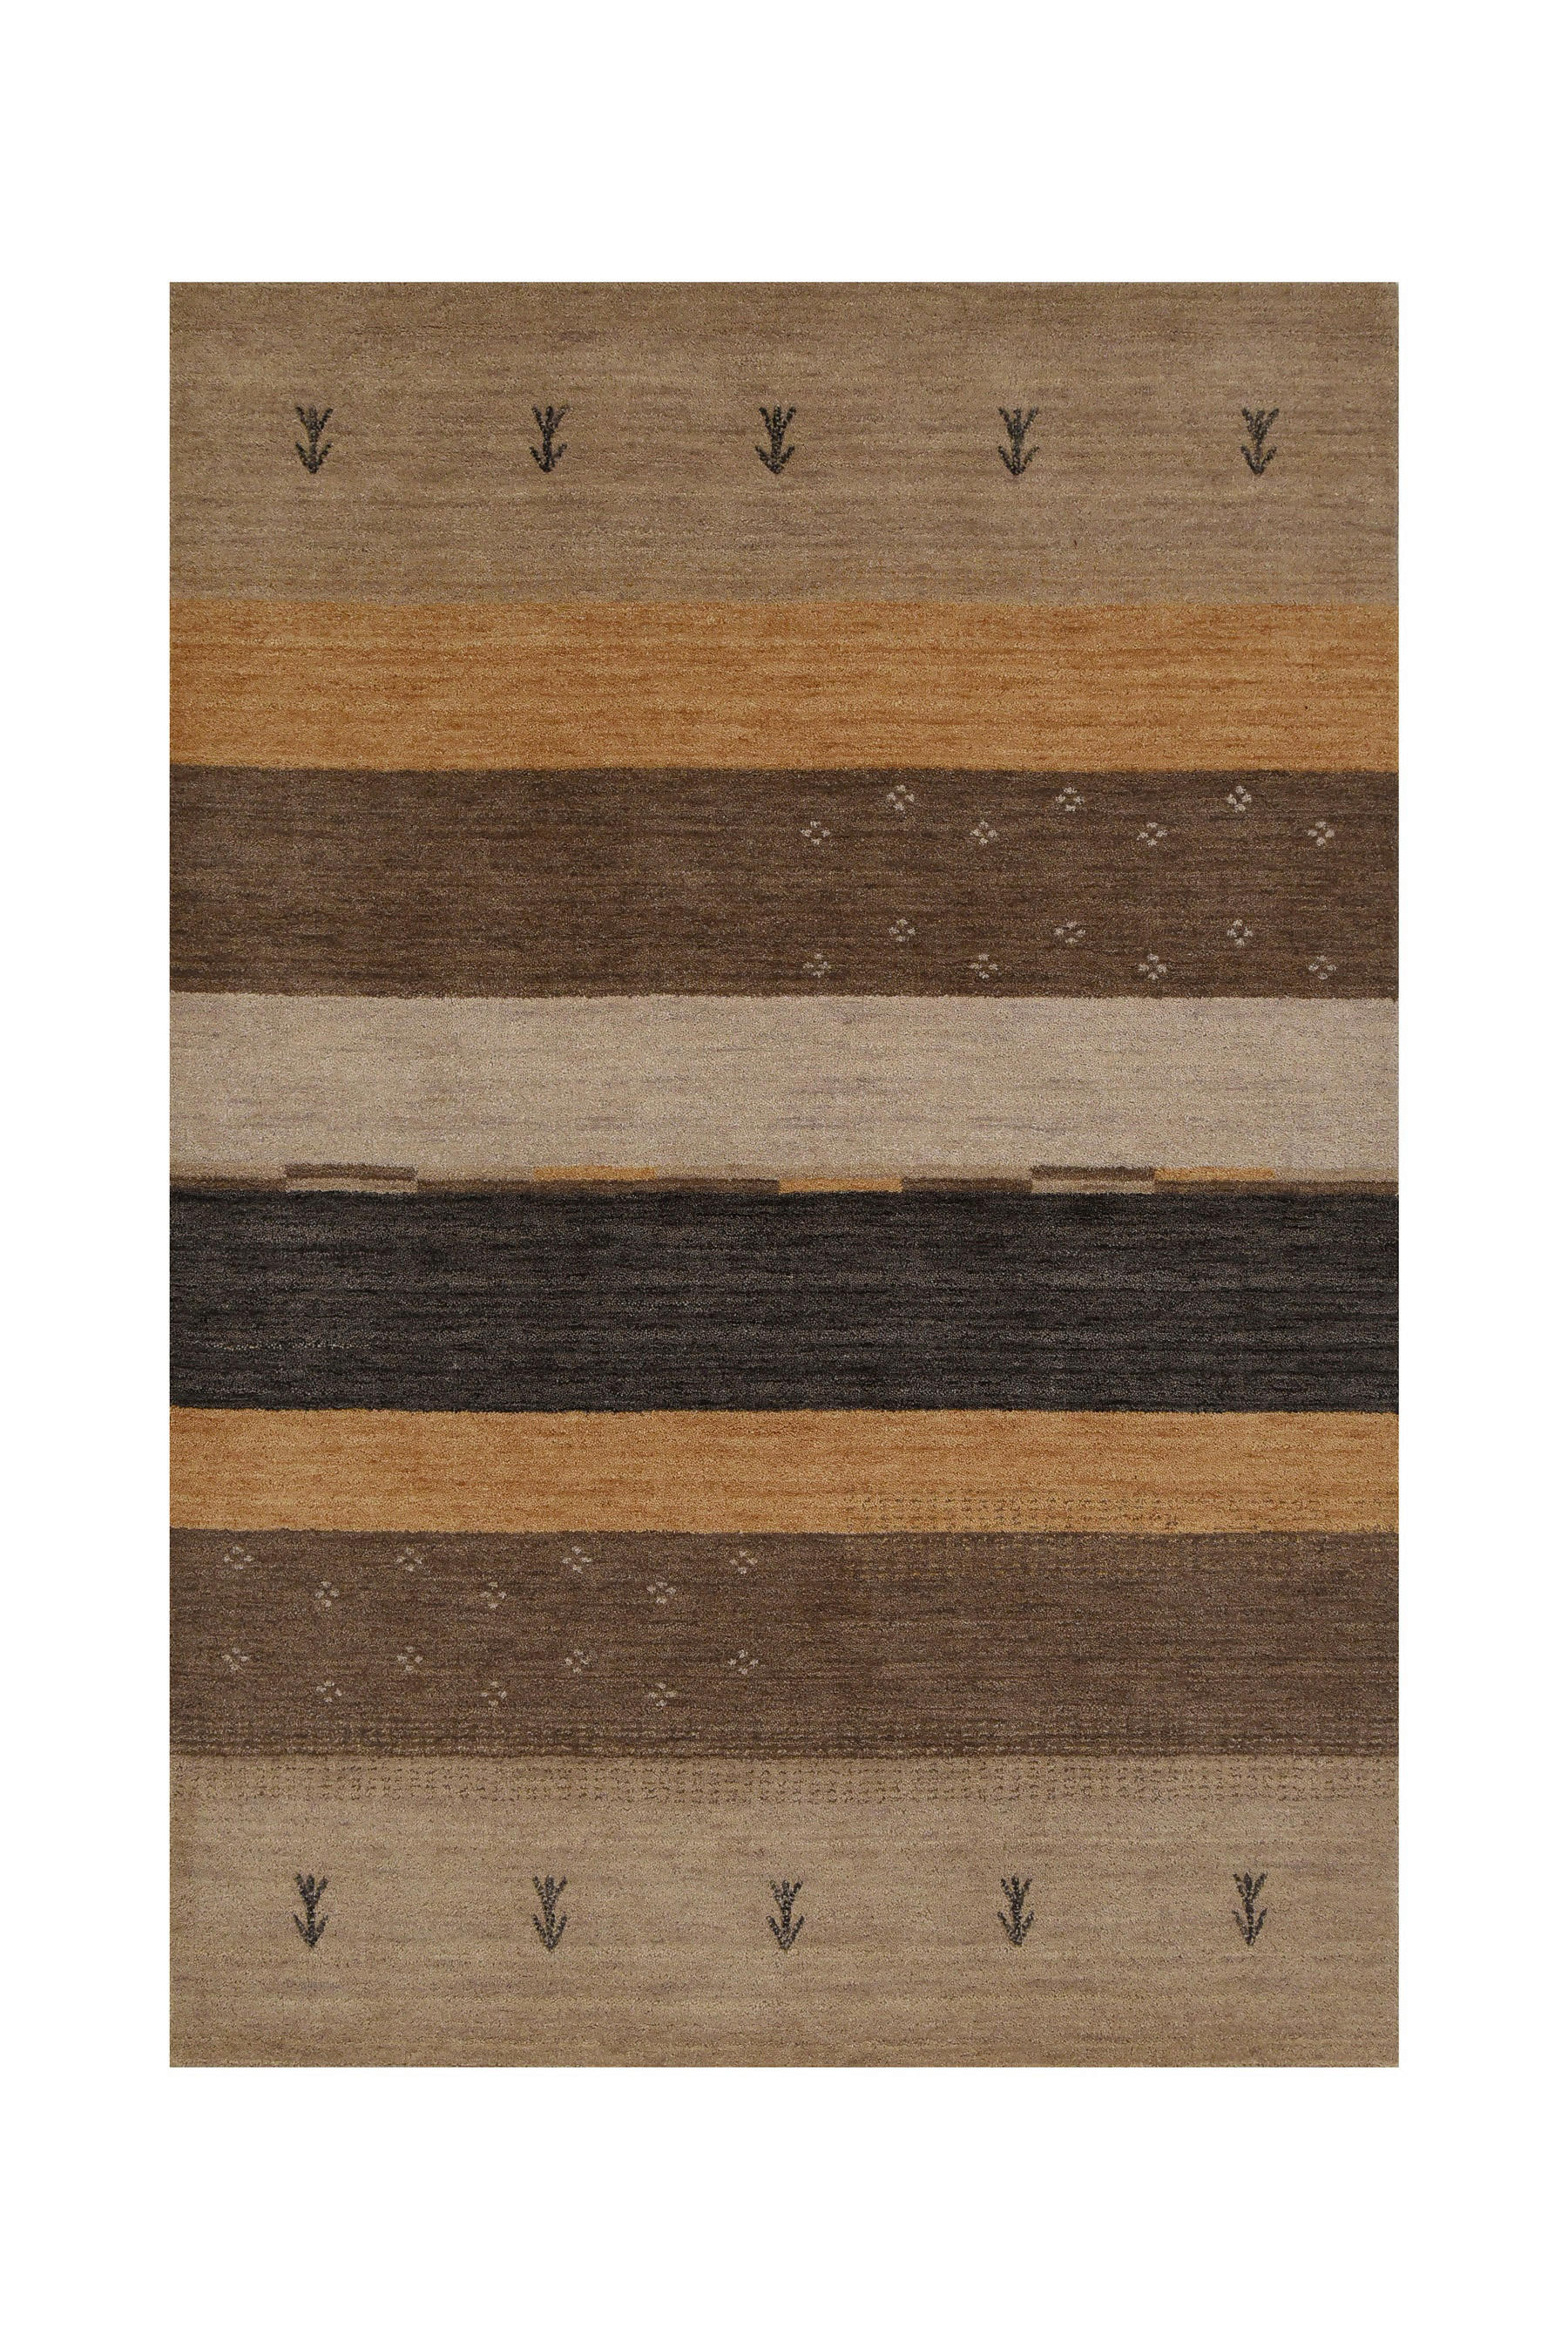 ORIENTTEPPICH Alkatif Nomad   - Beige/Braun, LIFESTYLE, Textil (60/90cm) - Cazaris